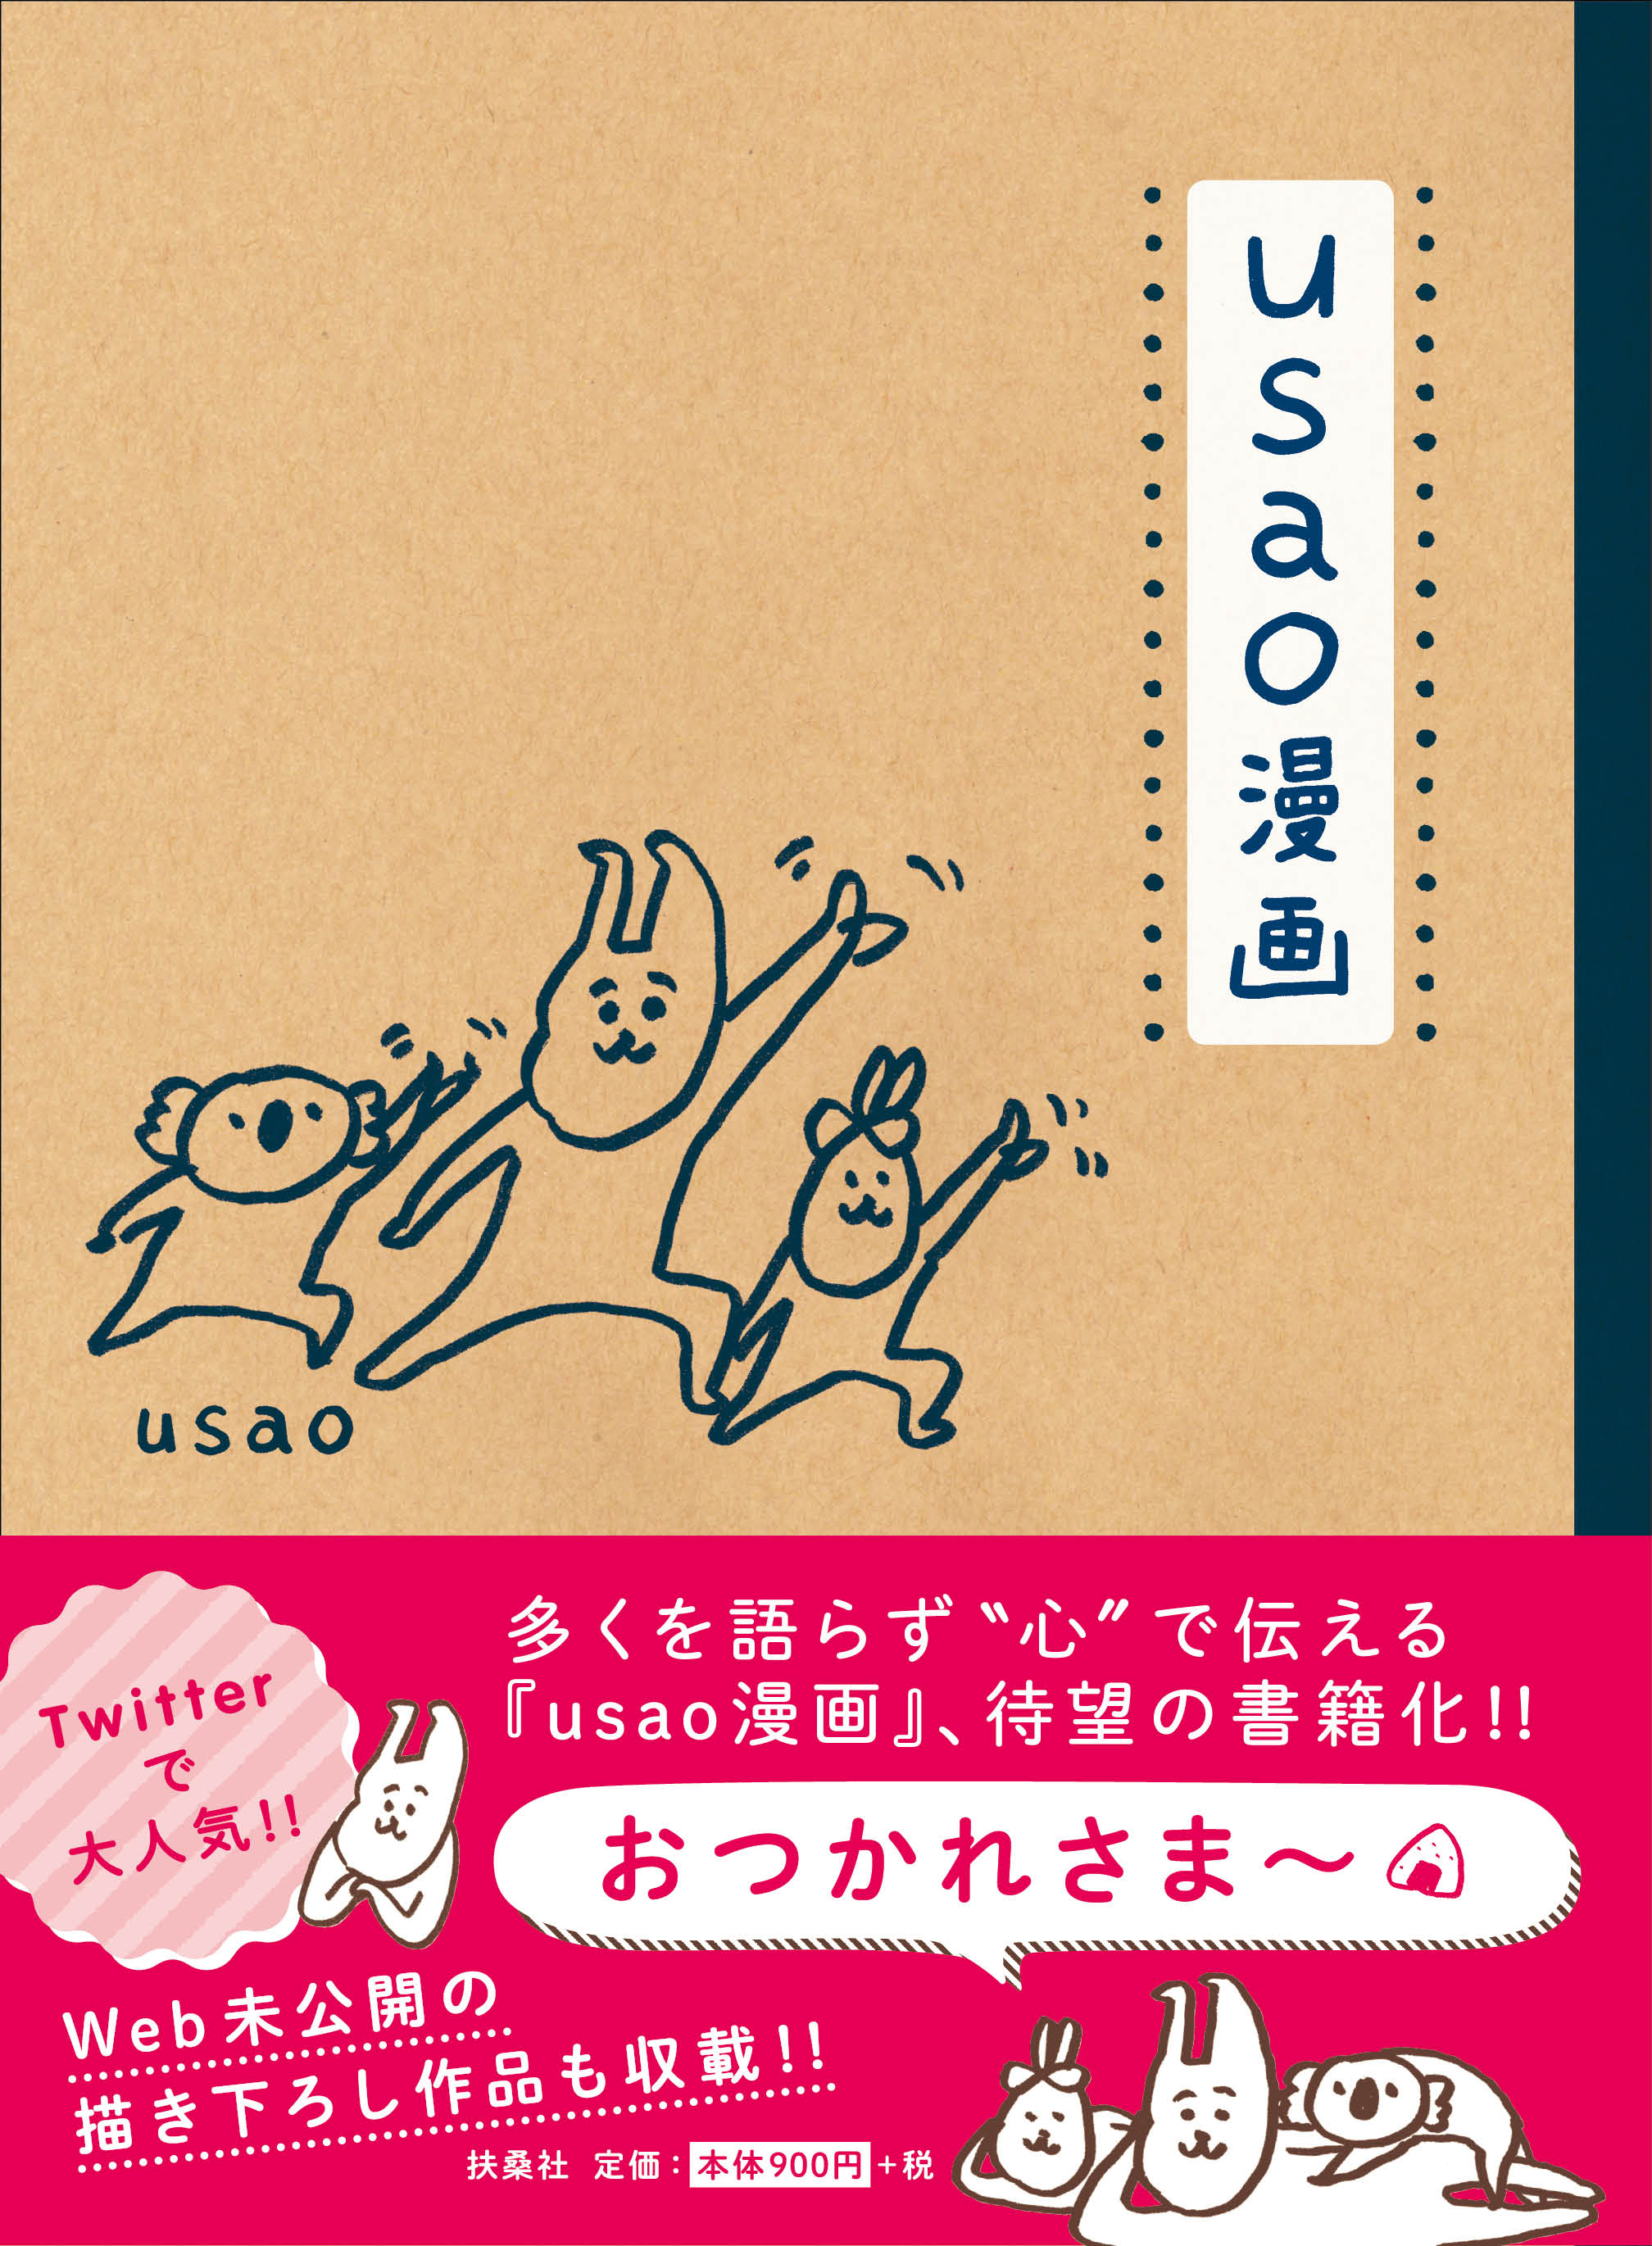 今大注目の癒しキャラクターusaoの Usao漫画 満を持して発売 こころあたたまる1冊 デザインってオモシロイ Mdn Design Interactive